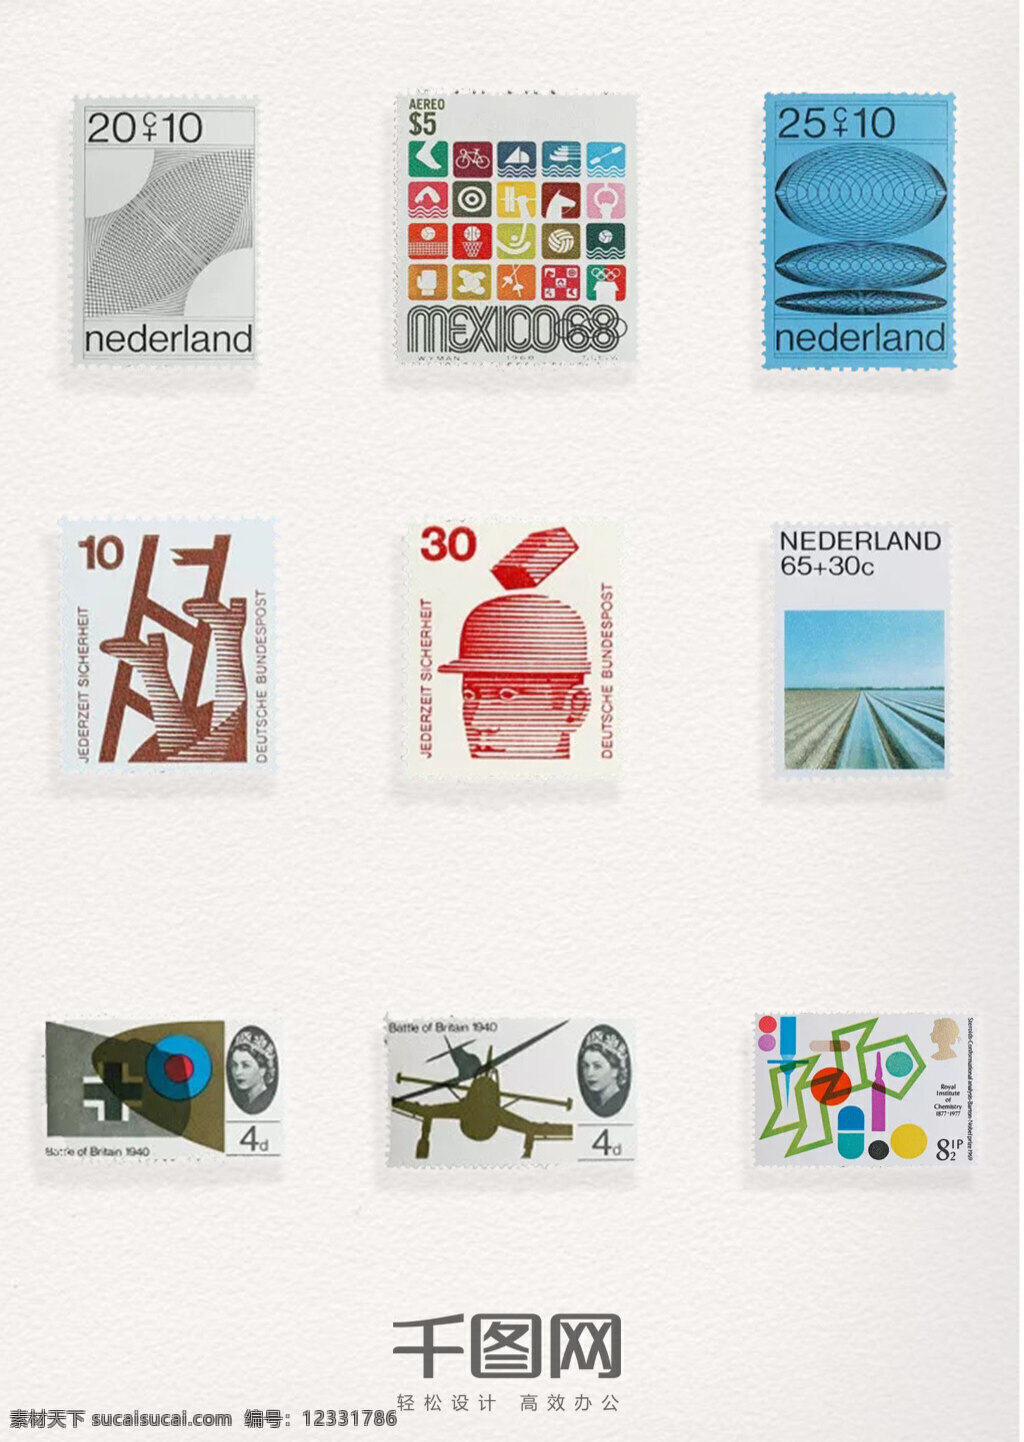 奥运 系列 图案 邮票 元素 装饰 奥运系列邮票 奥运系列图案 邮票元素 邮票图案 邮票装饰元素 彩色邮票